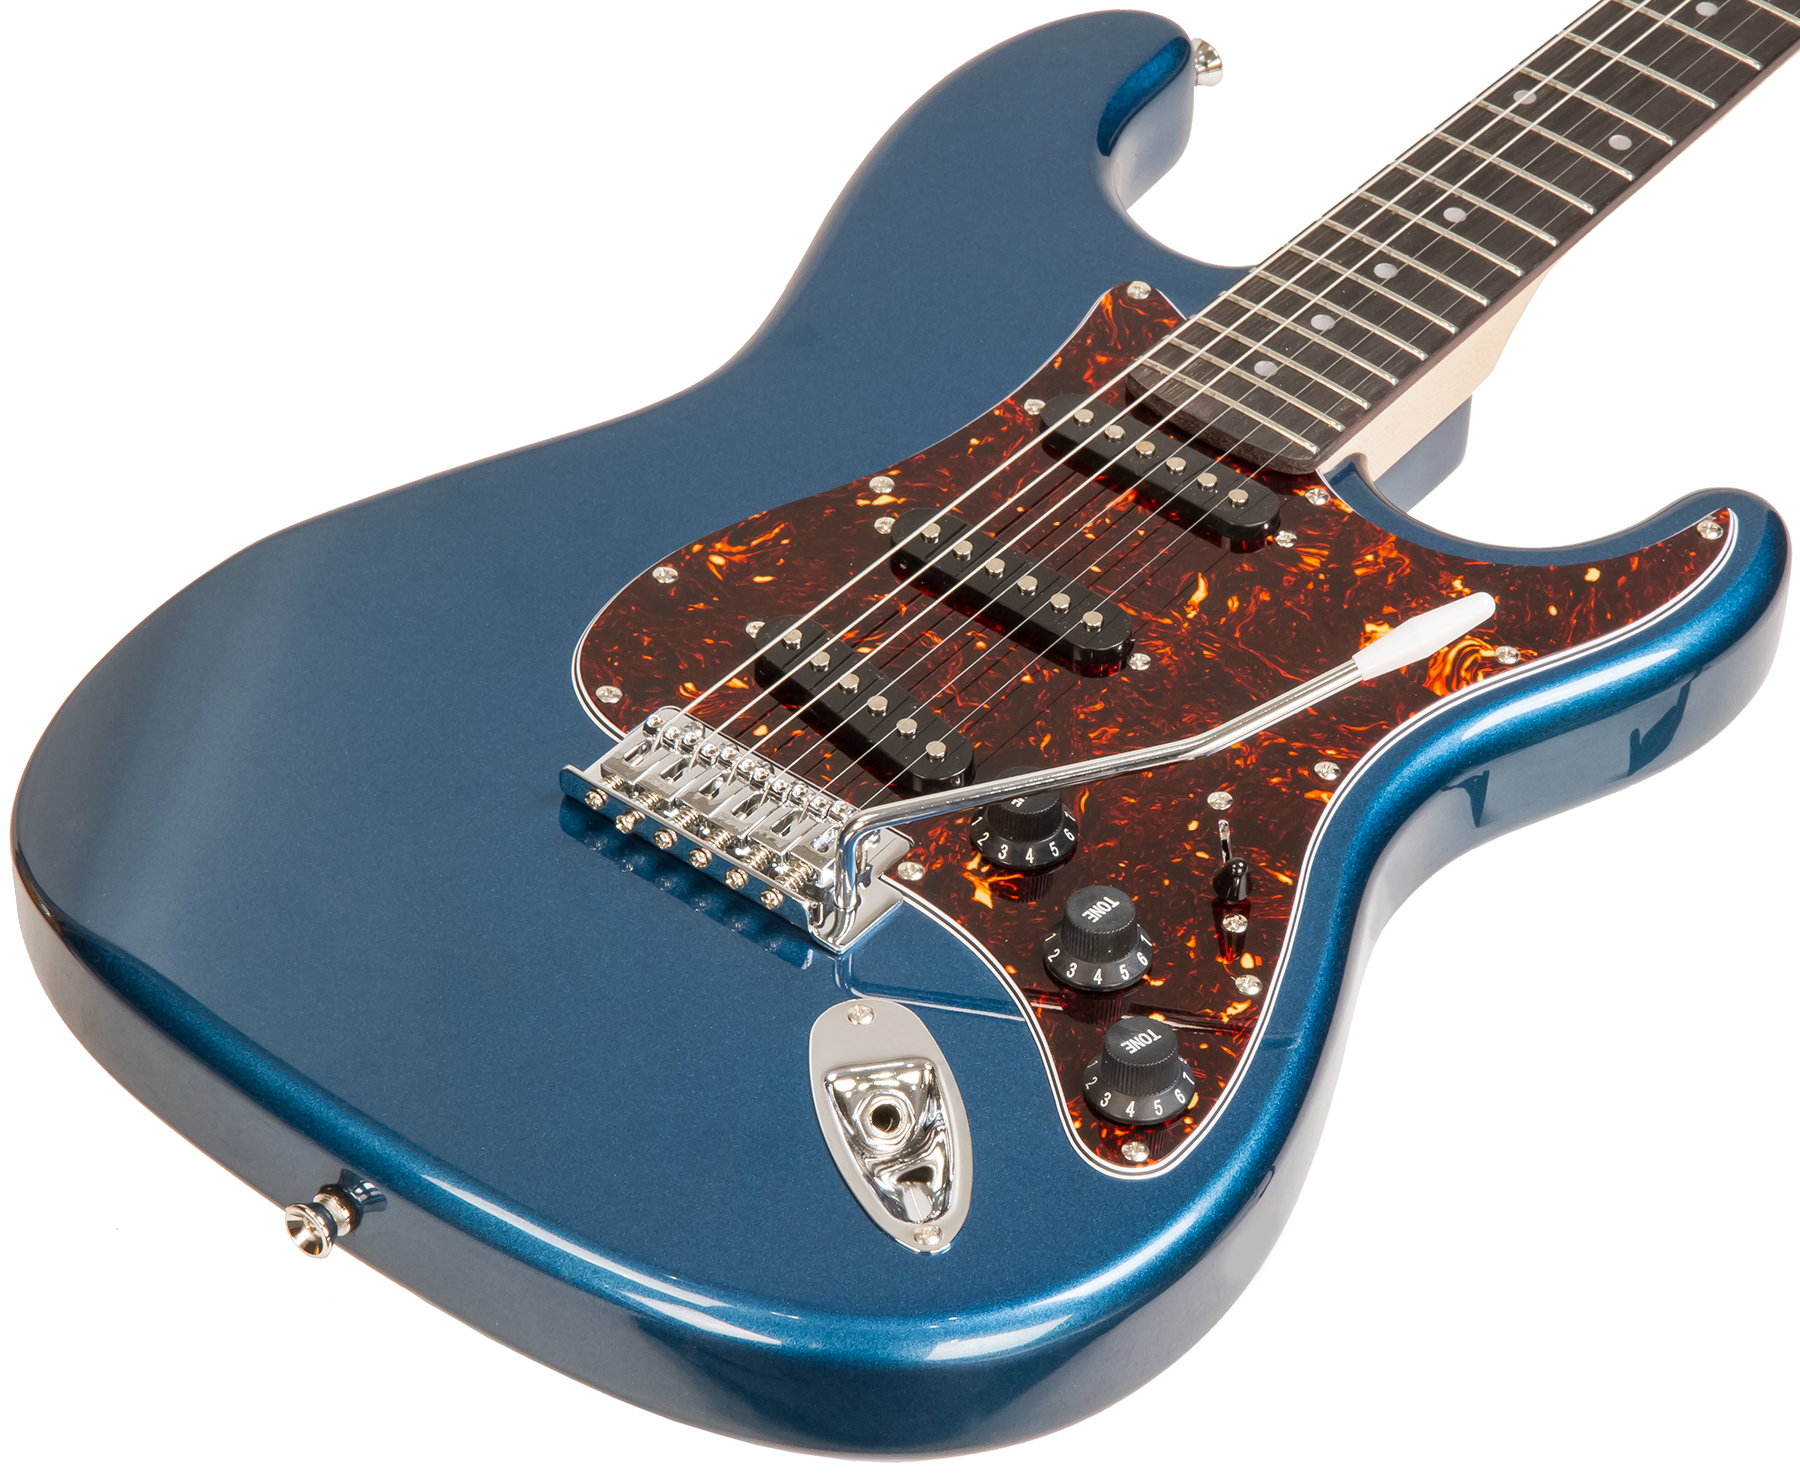 Eastone Str70t + Blackstar Id Core V3 10w +courroie +housse +cable +mediators - Lake Placid Blue - Packs guitarra eléctrica - Variation 1